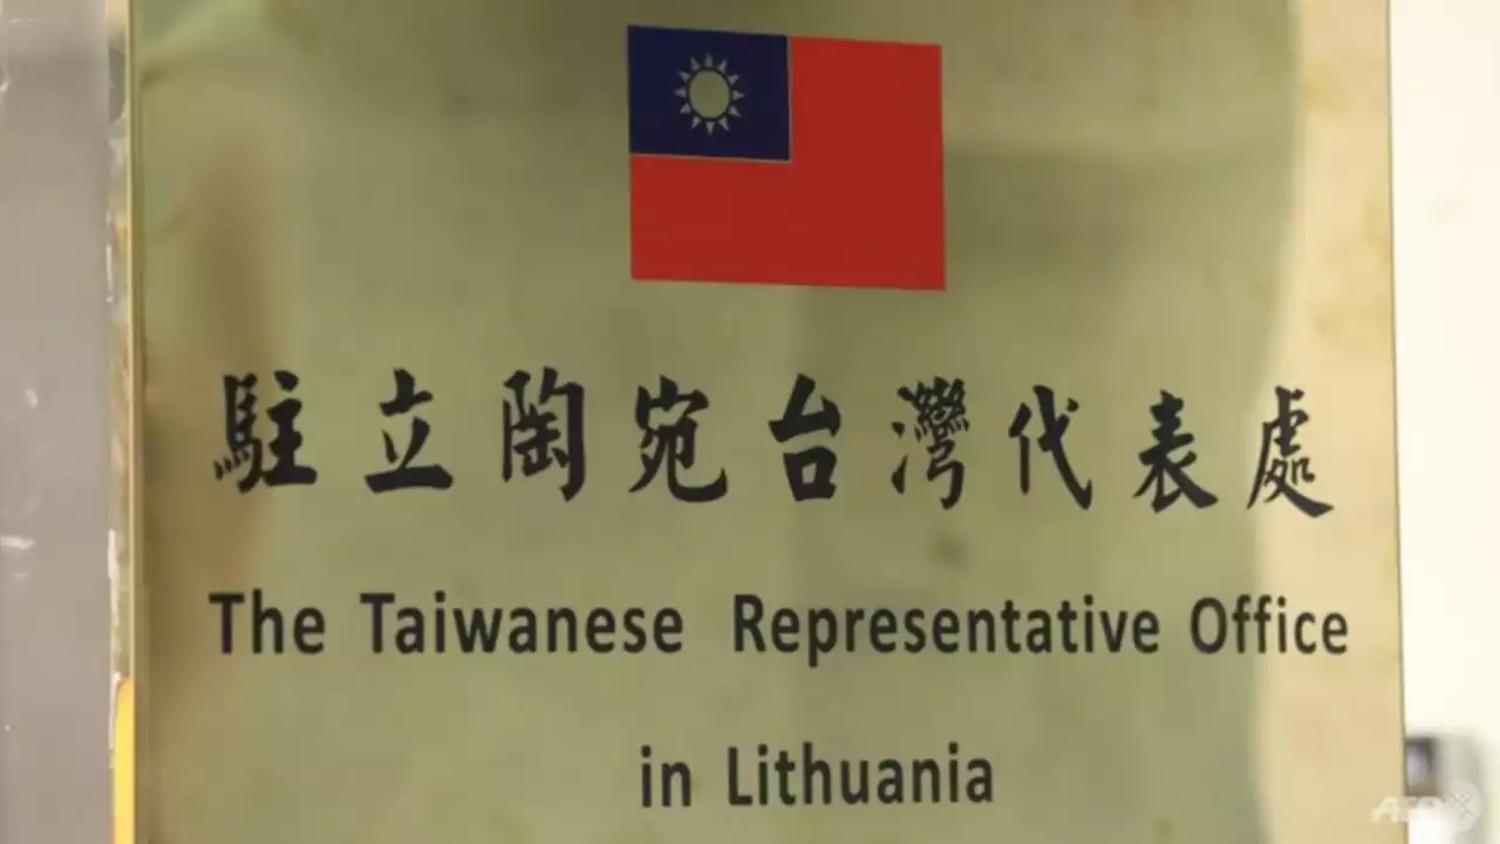 Đại diện Đài Loan: Việc đại diện Đài Loan gặp gỡ với các nhà lãnh đạo và các đối tác quan trọng, tỏ ra rất hiệu quả. Khiến cho hình ảnh này thu hút được sự quan tâm của các khách hàng và nhà đầu tư và càng tiếp thêm động lực phát triển cho kinh tế của Đài Loan.